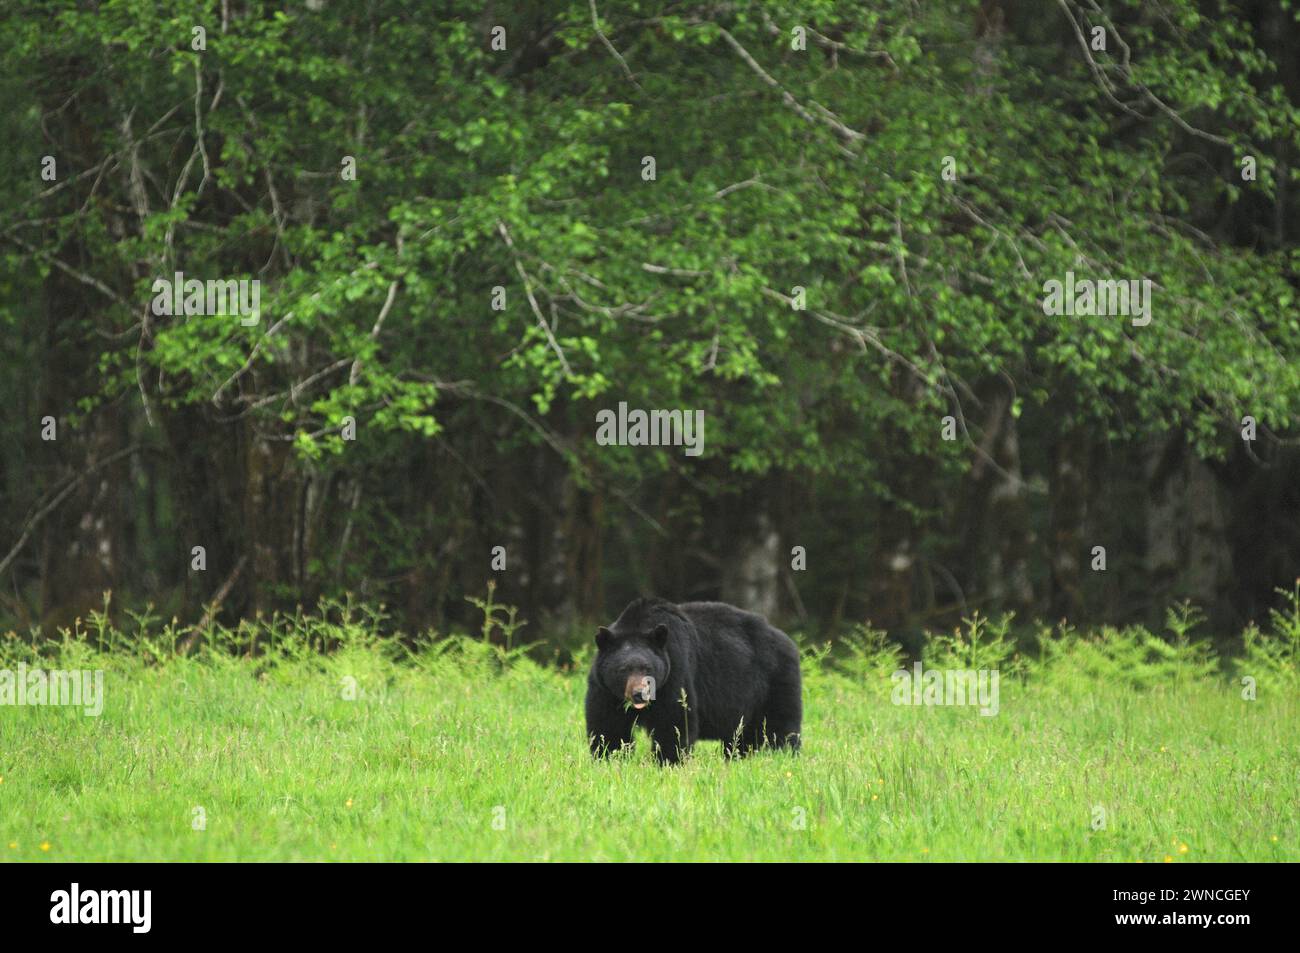 Ours noir Urus americanus mangeant de l'herbe dans un champ dans la forêt tropicale près du lac quinalt Olympic National Park Washington State USA Banque D'Images